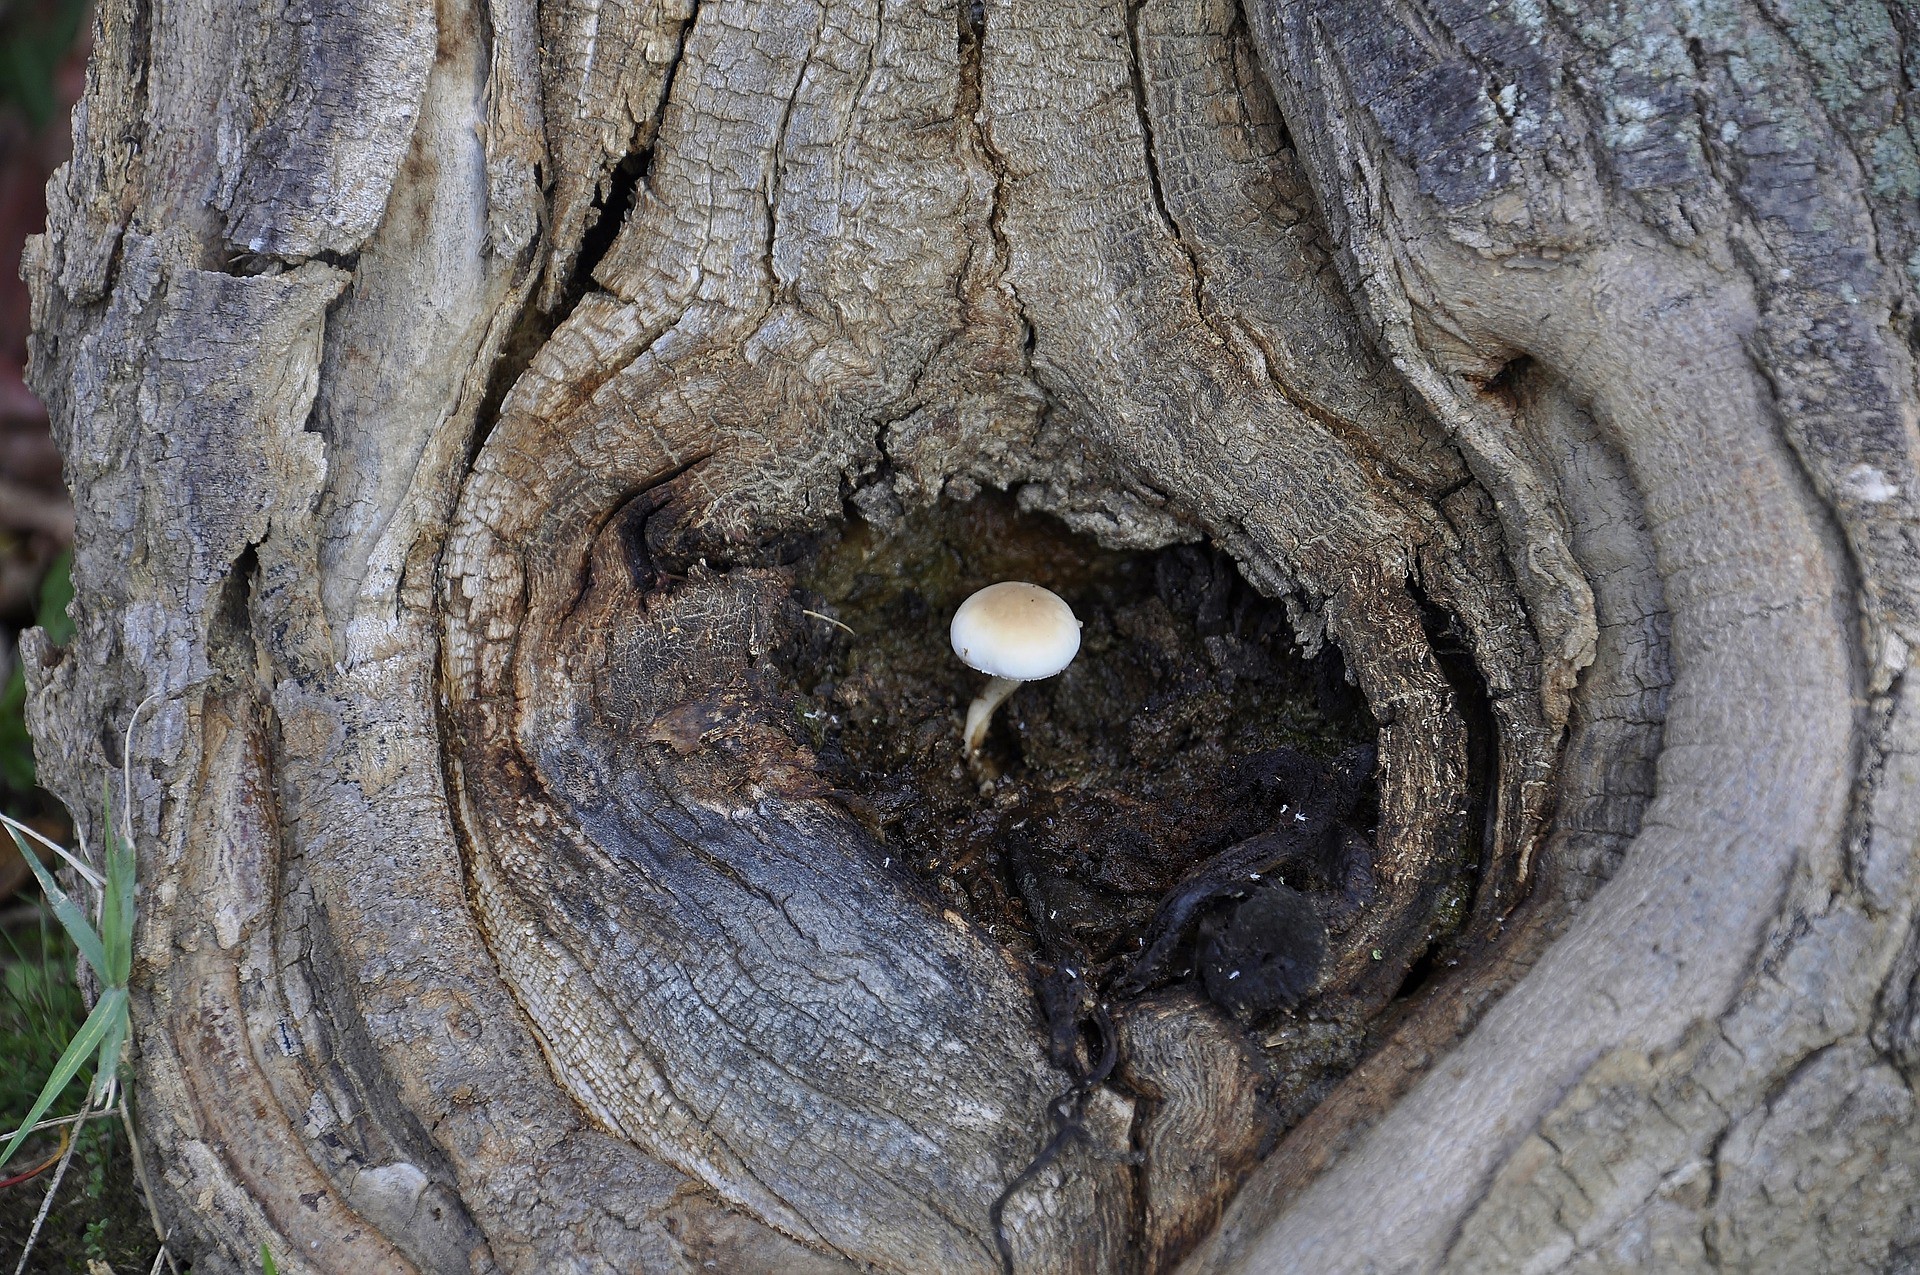 Ciência & Saúde: Resiliência, a capacidade de se recuperar mesmo após um trauma. Um cogumelo nasce numa pequena faixa de terra em um tronco (Foto: nonmisvegliate / Pixabay )